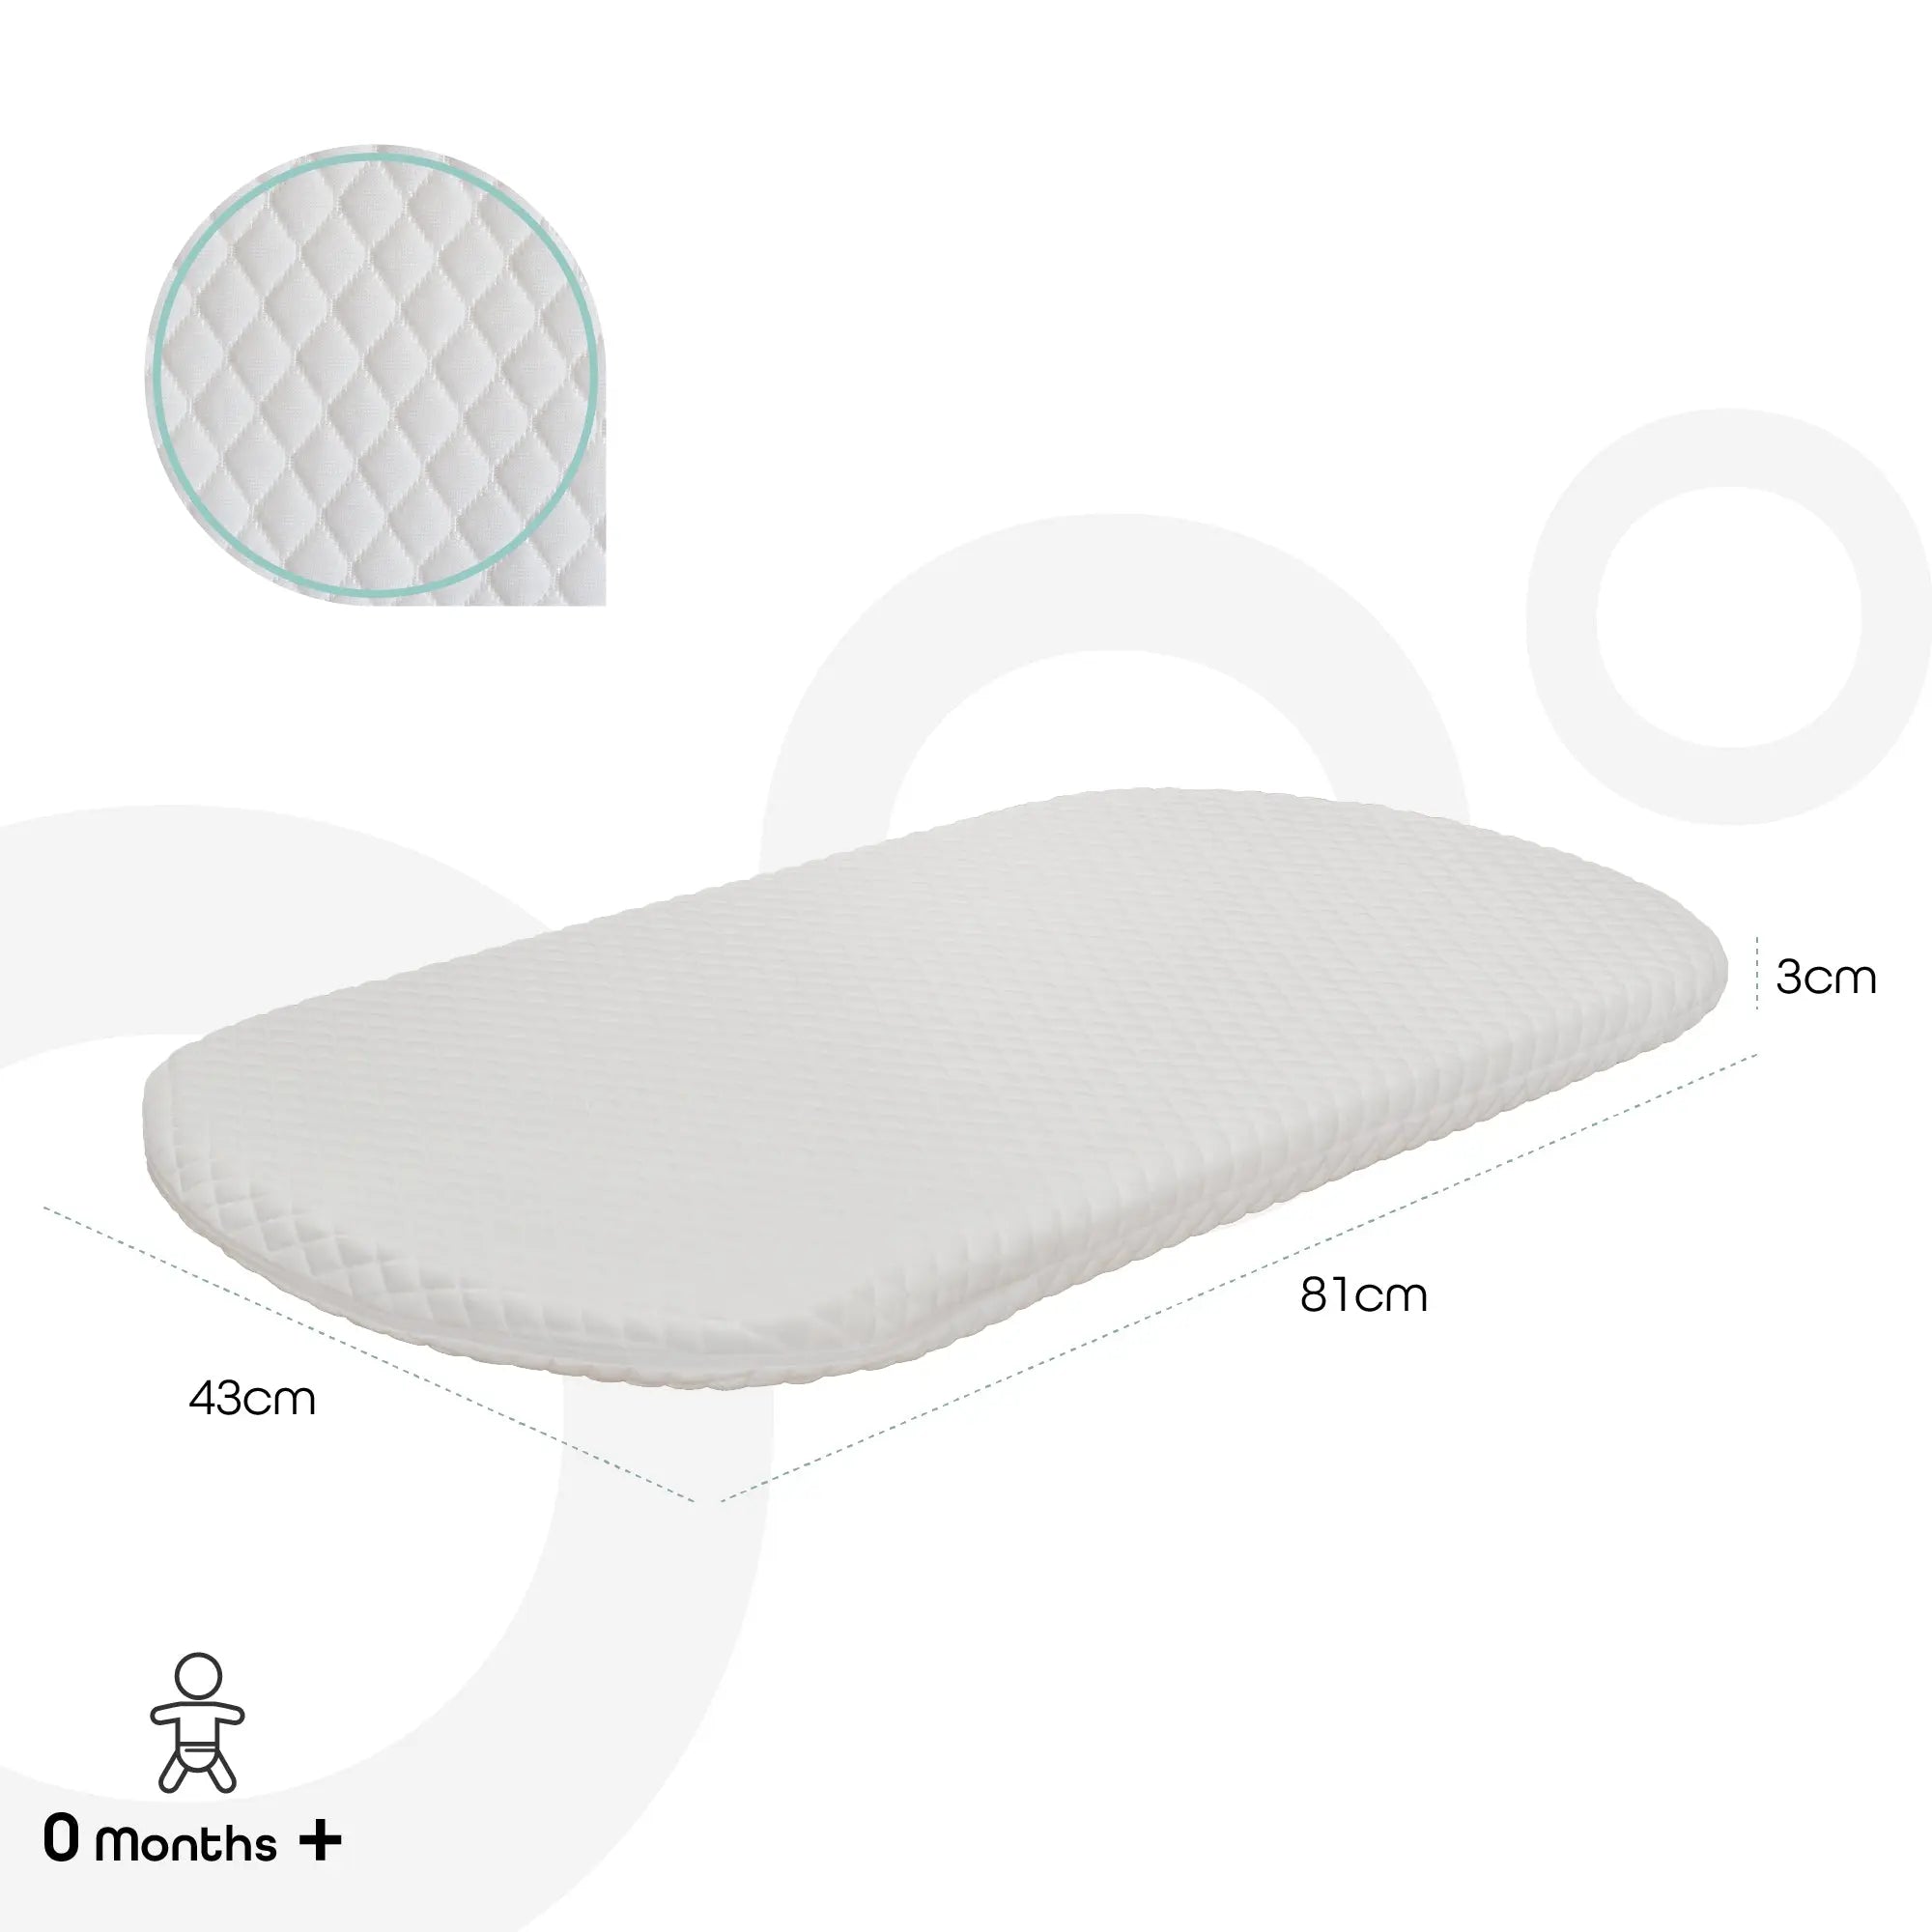 <tc>مون - مرتبة سرير الأطفال والمهد - 81 × 43 × 3 سم - مرتبة طفل صغير، غطاء قابل للإزالة (أبيض)</tc>